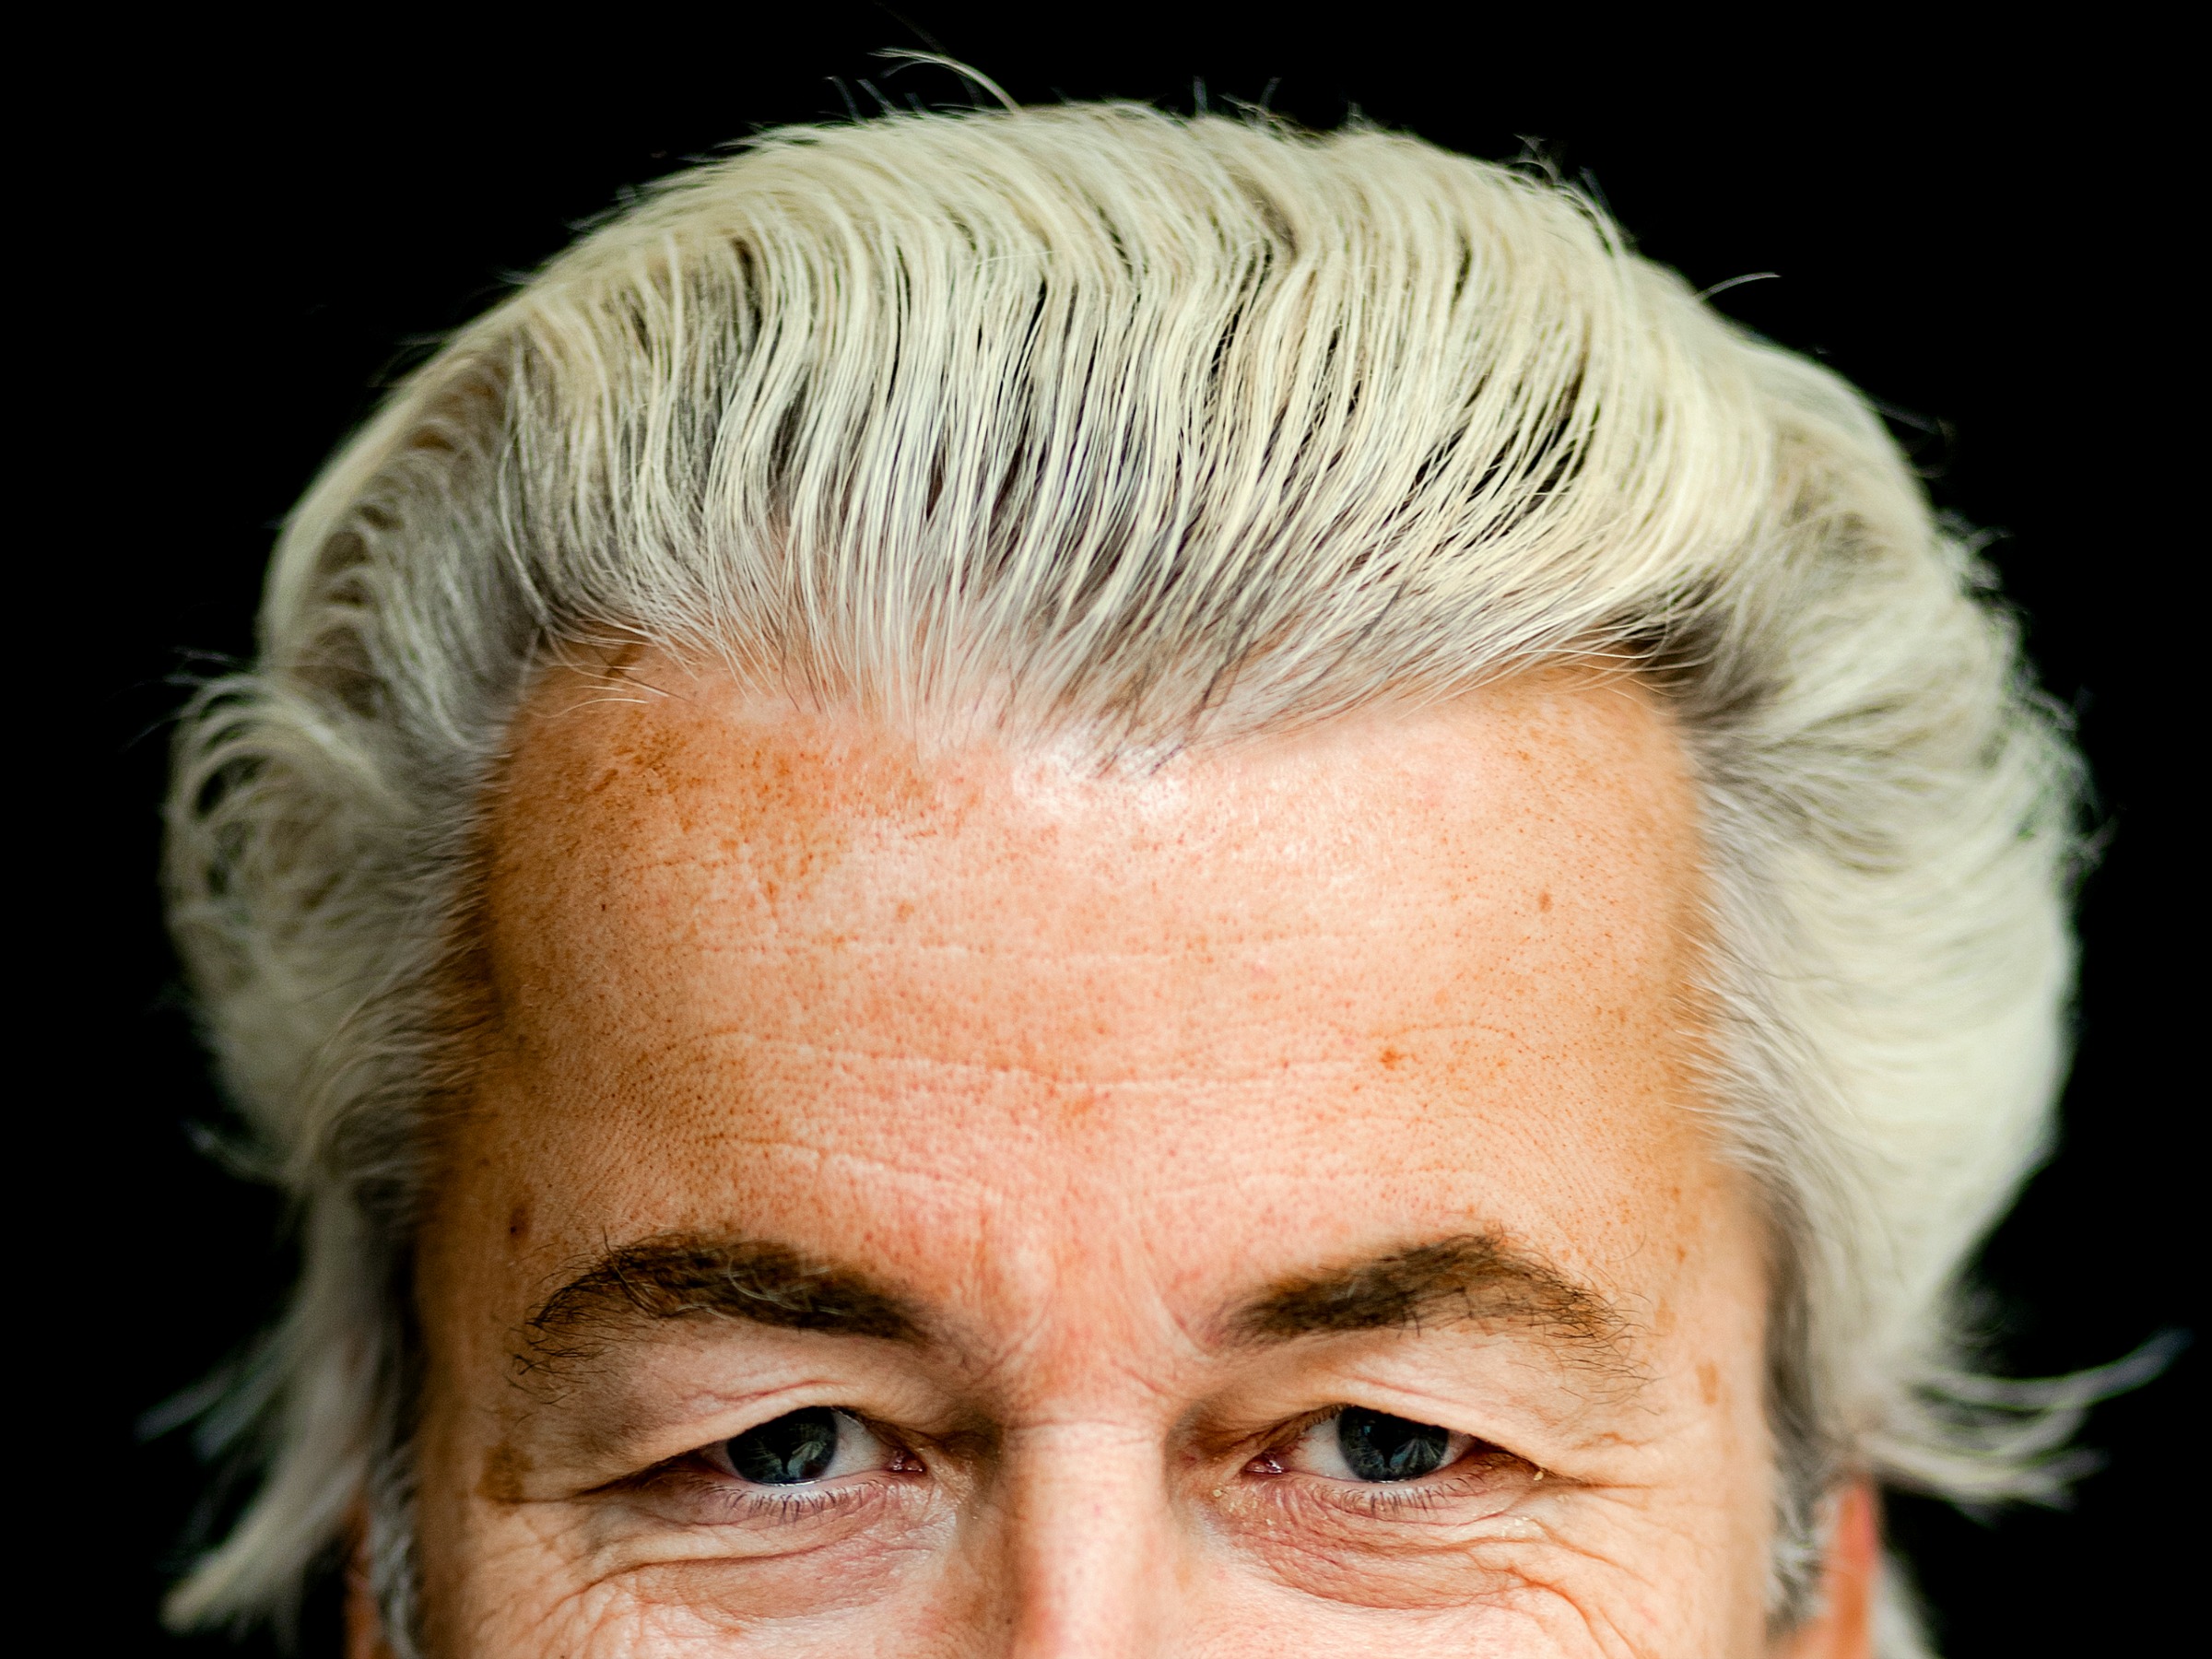 PVV, Geert Wilders, The Netherlands